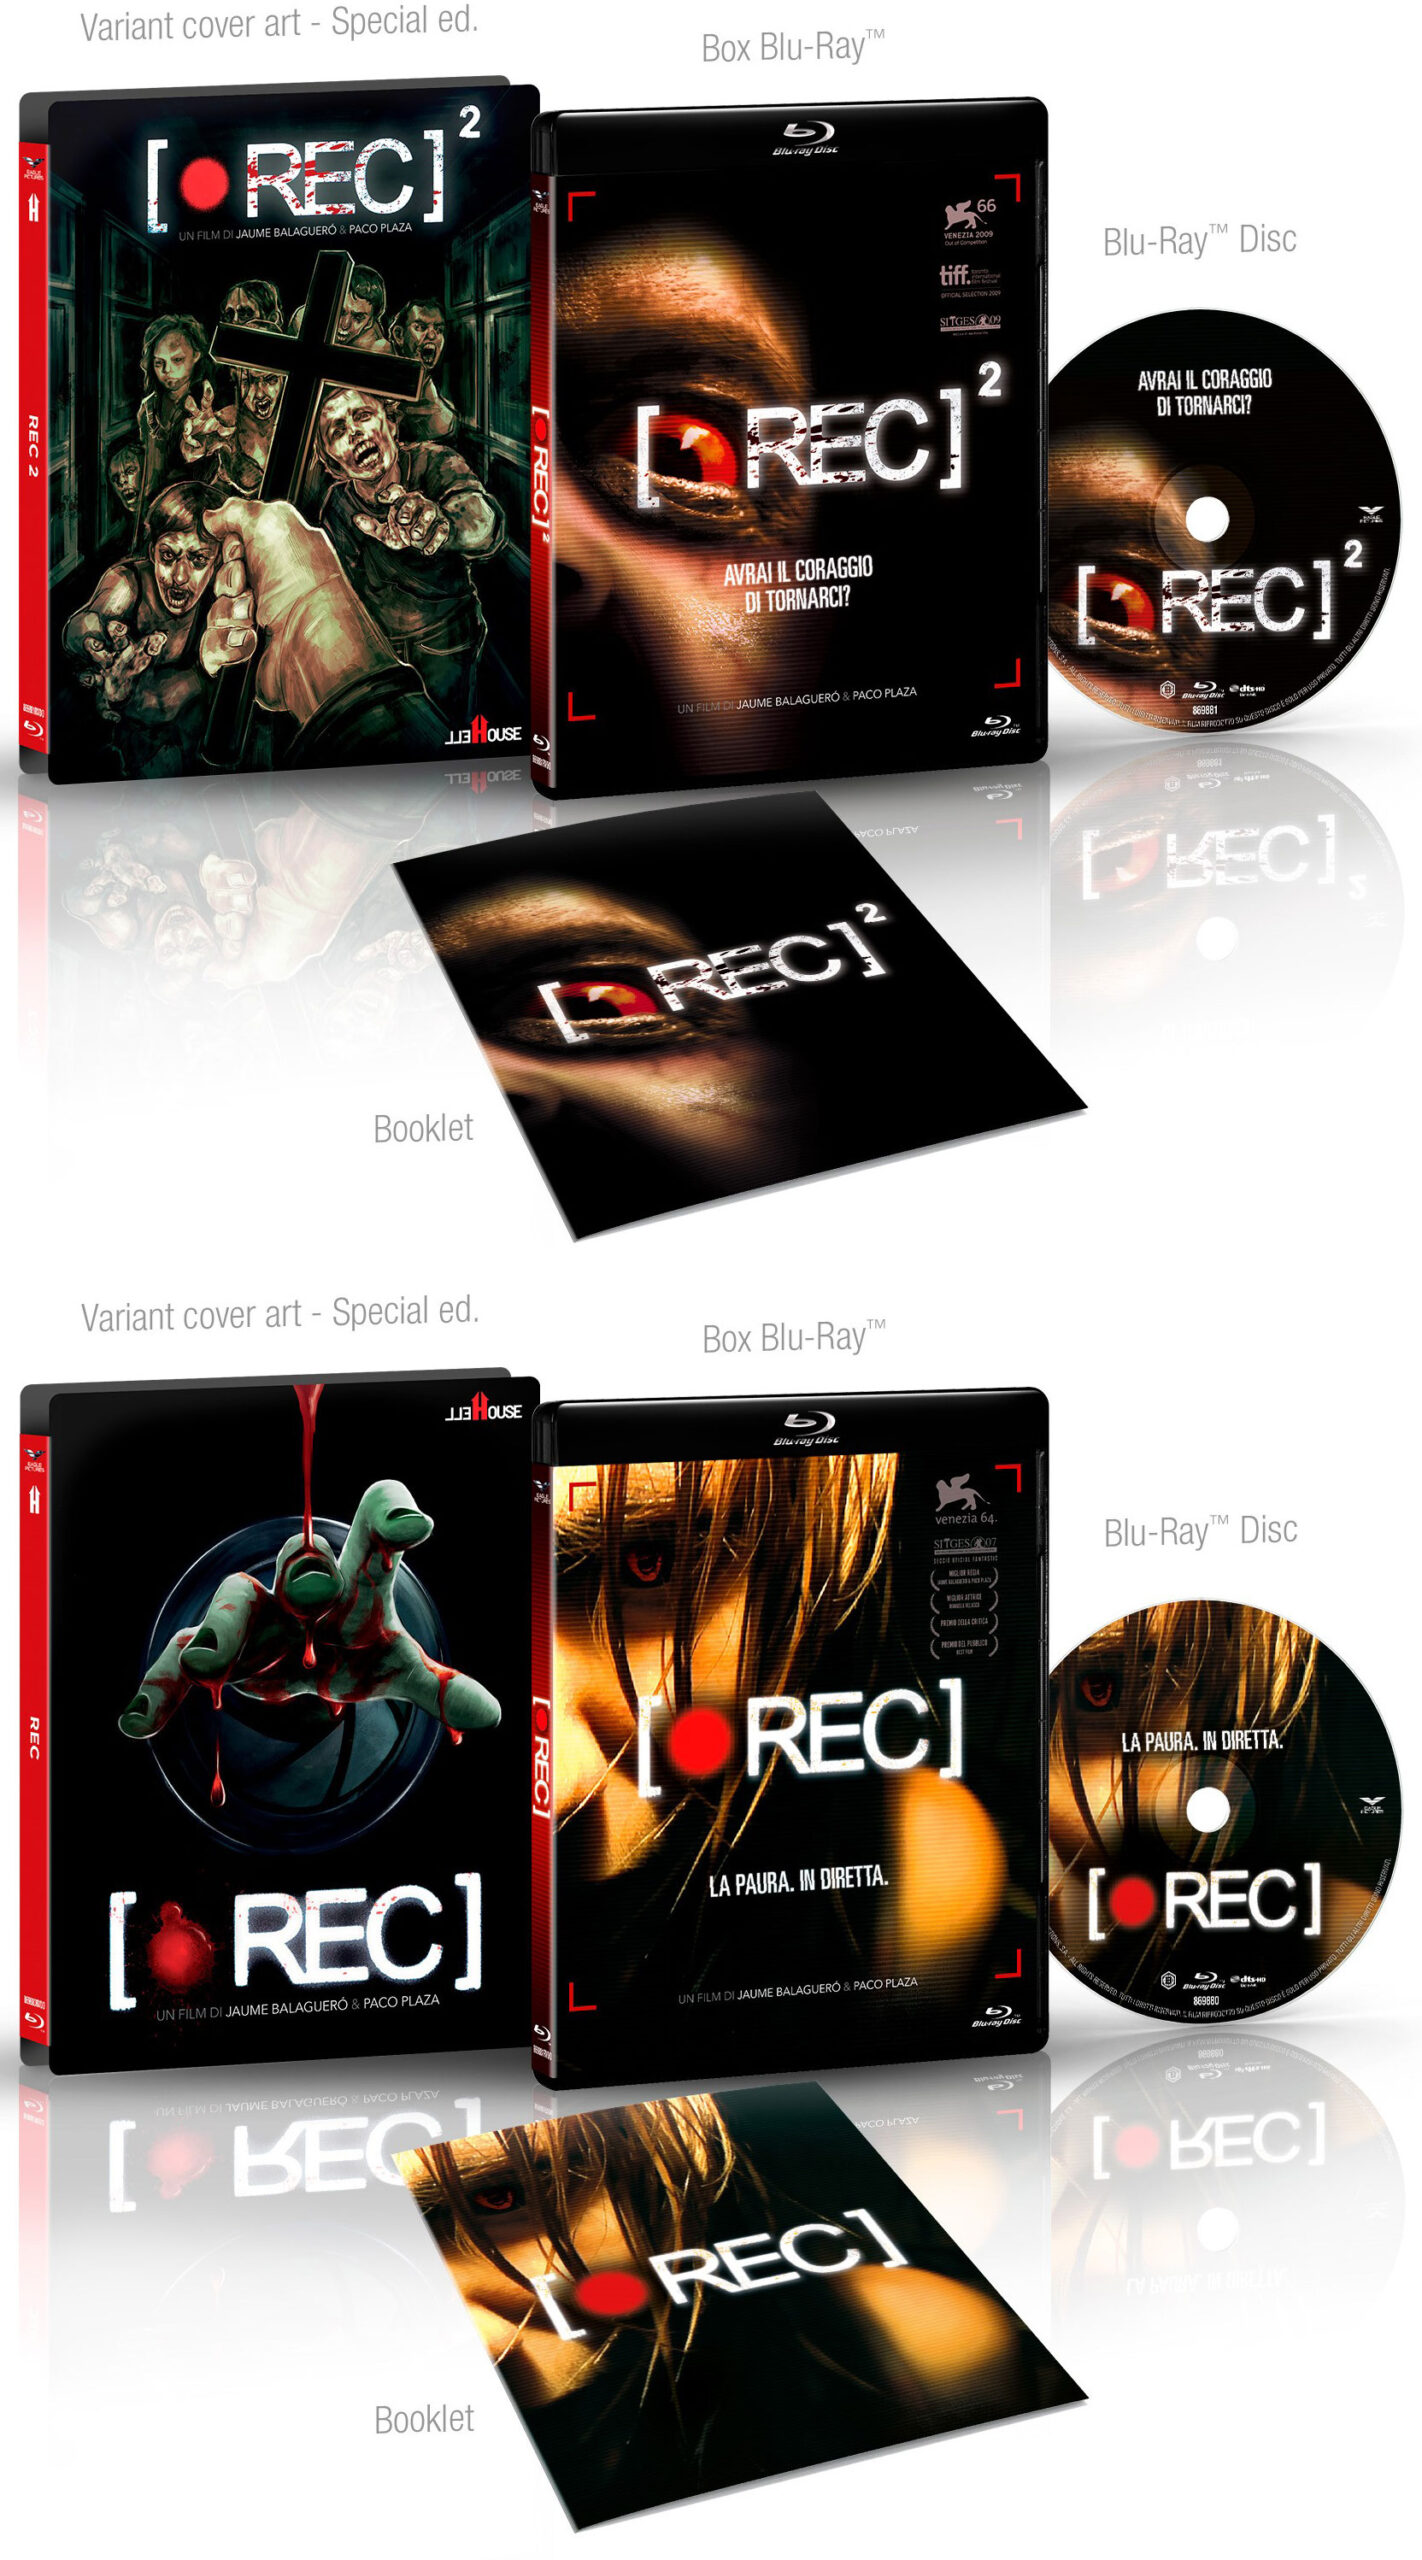 REC e REC 2 in Blu-Ray